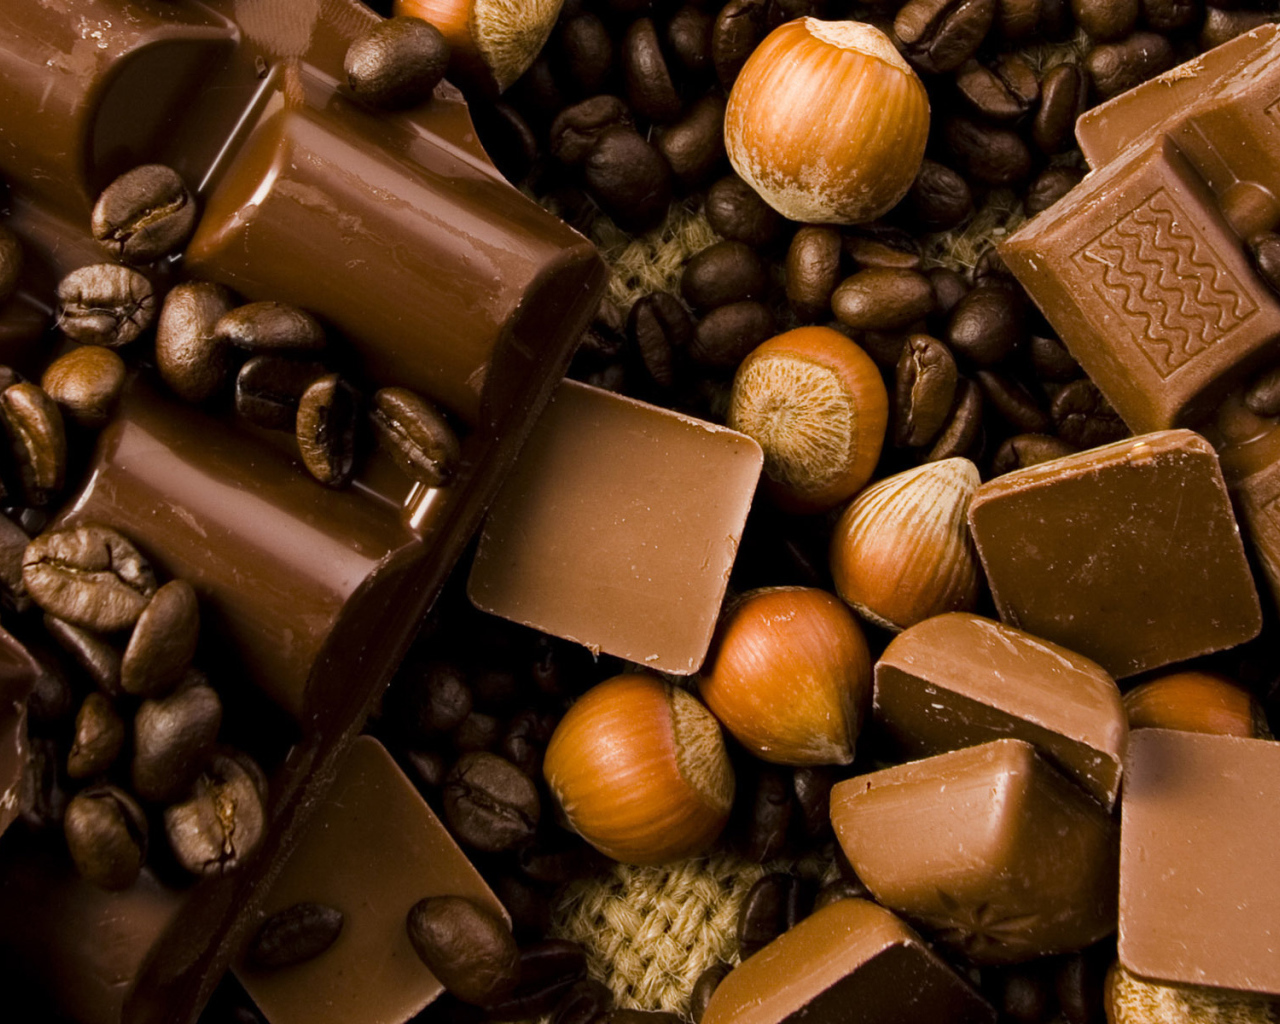 Орехи и шоколад